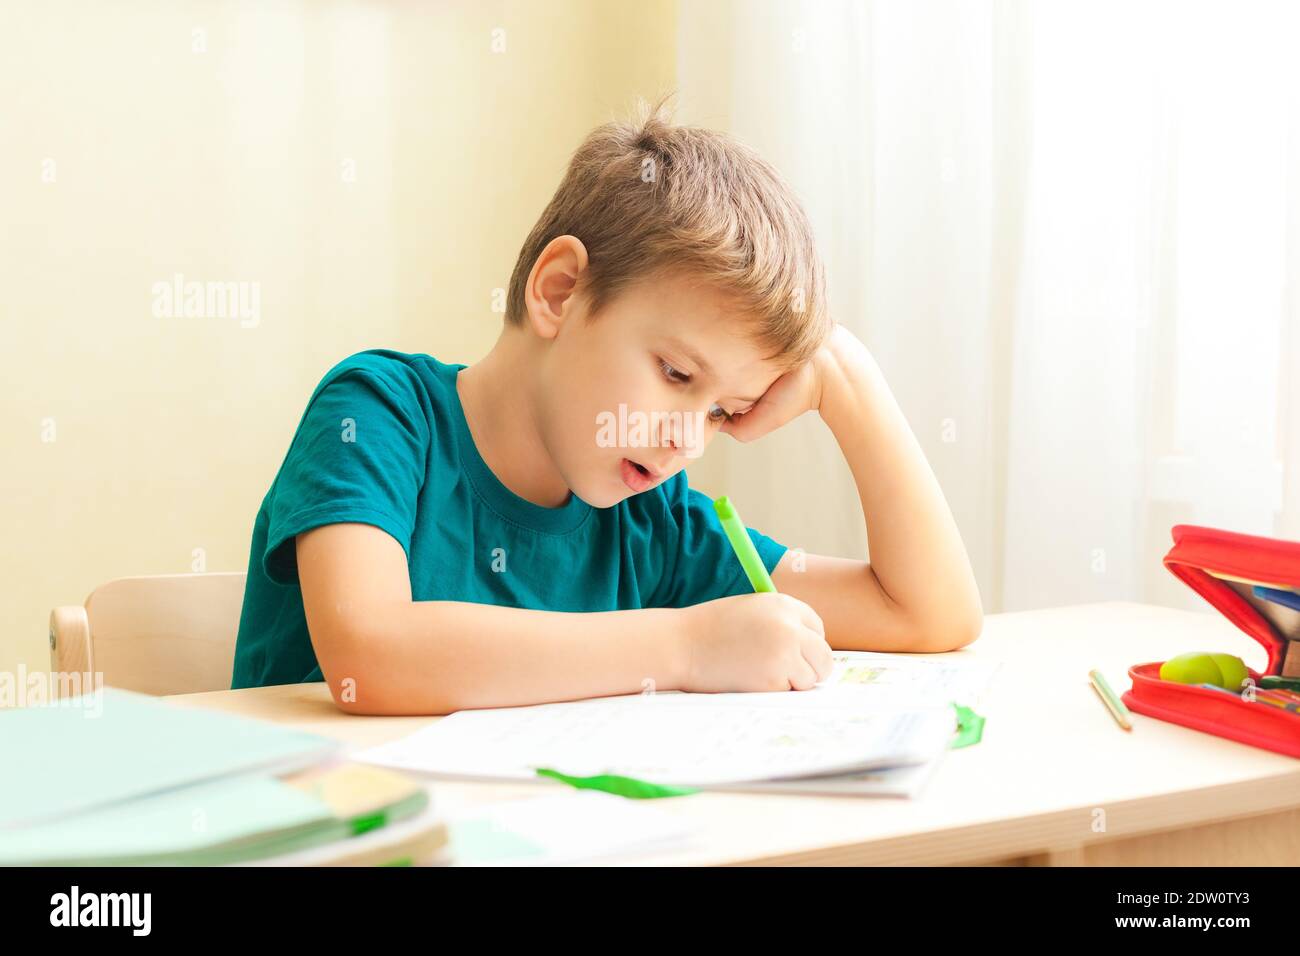 7 sì, vecchio ragazzo seduto alla scrivania e facendo i compiti. I bambini scrivono note nel notebook, compiti difficili, bambini concentrandosi sugli esempi Foto Stock